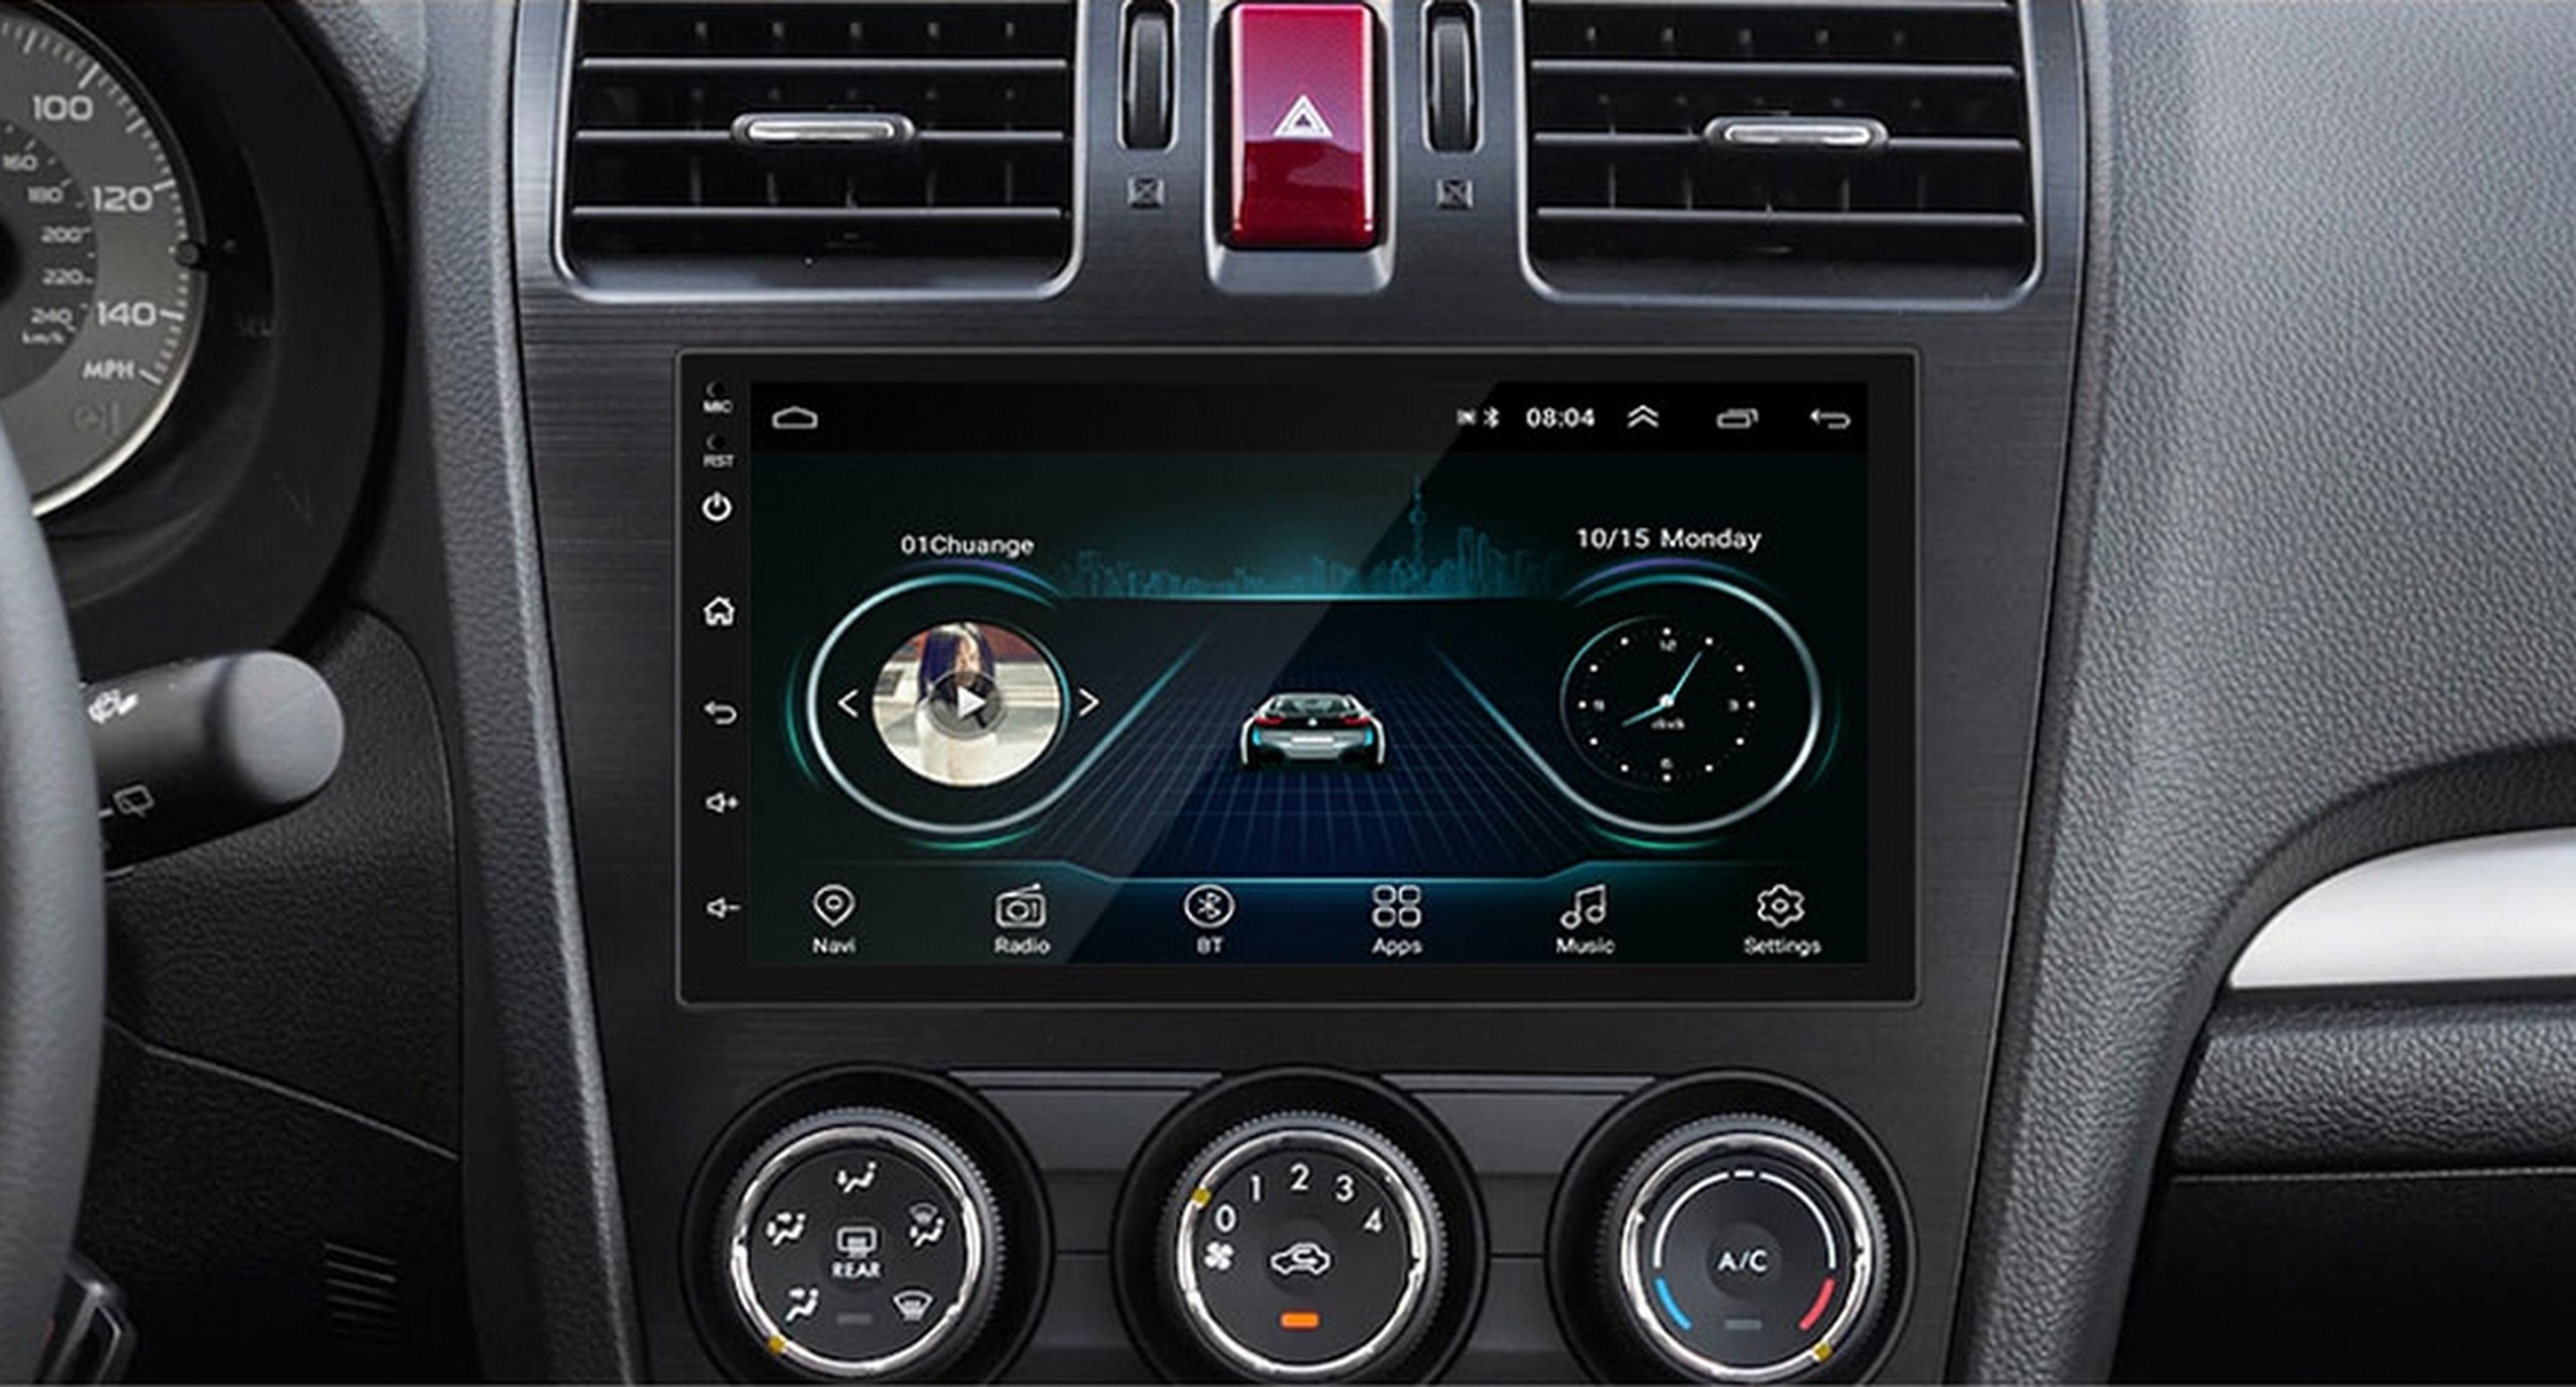 Moderniza tu coche con esta radio DIN con Android Auto y pantalla táctil por menos de 60 euros